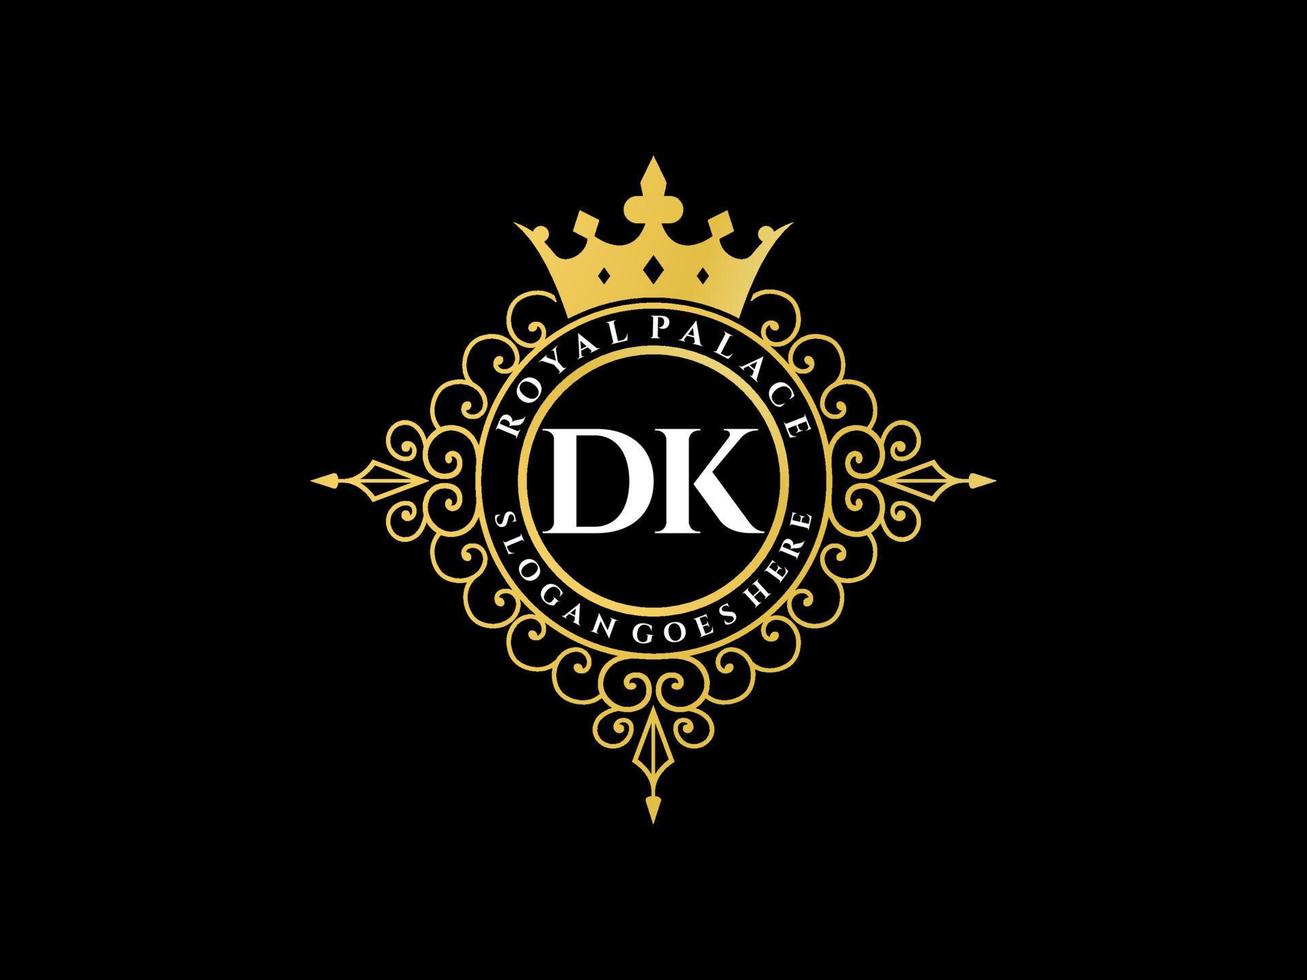 letra dk logotipo victoriano de lujo real antiguo con marco ornamental. vector